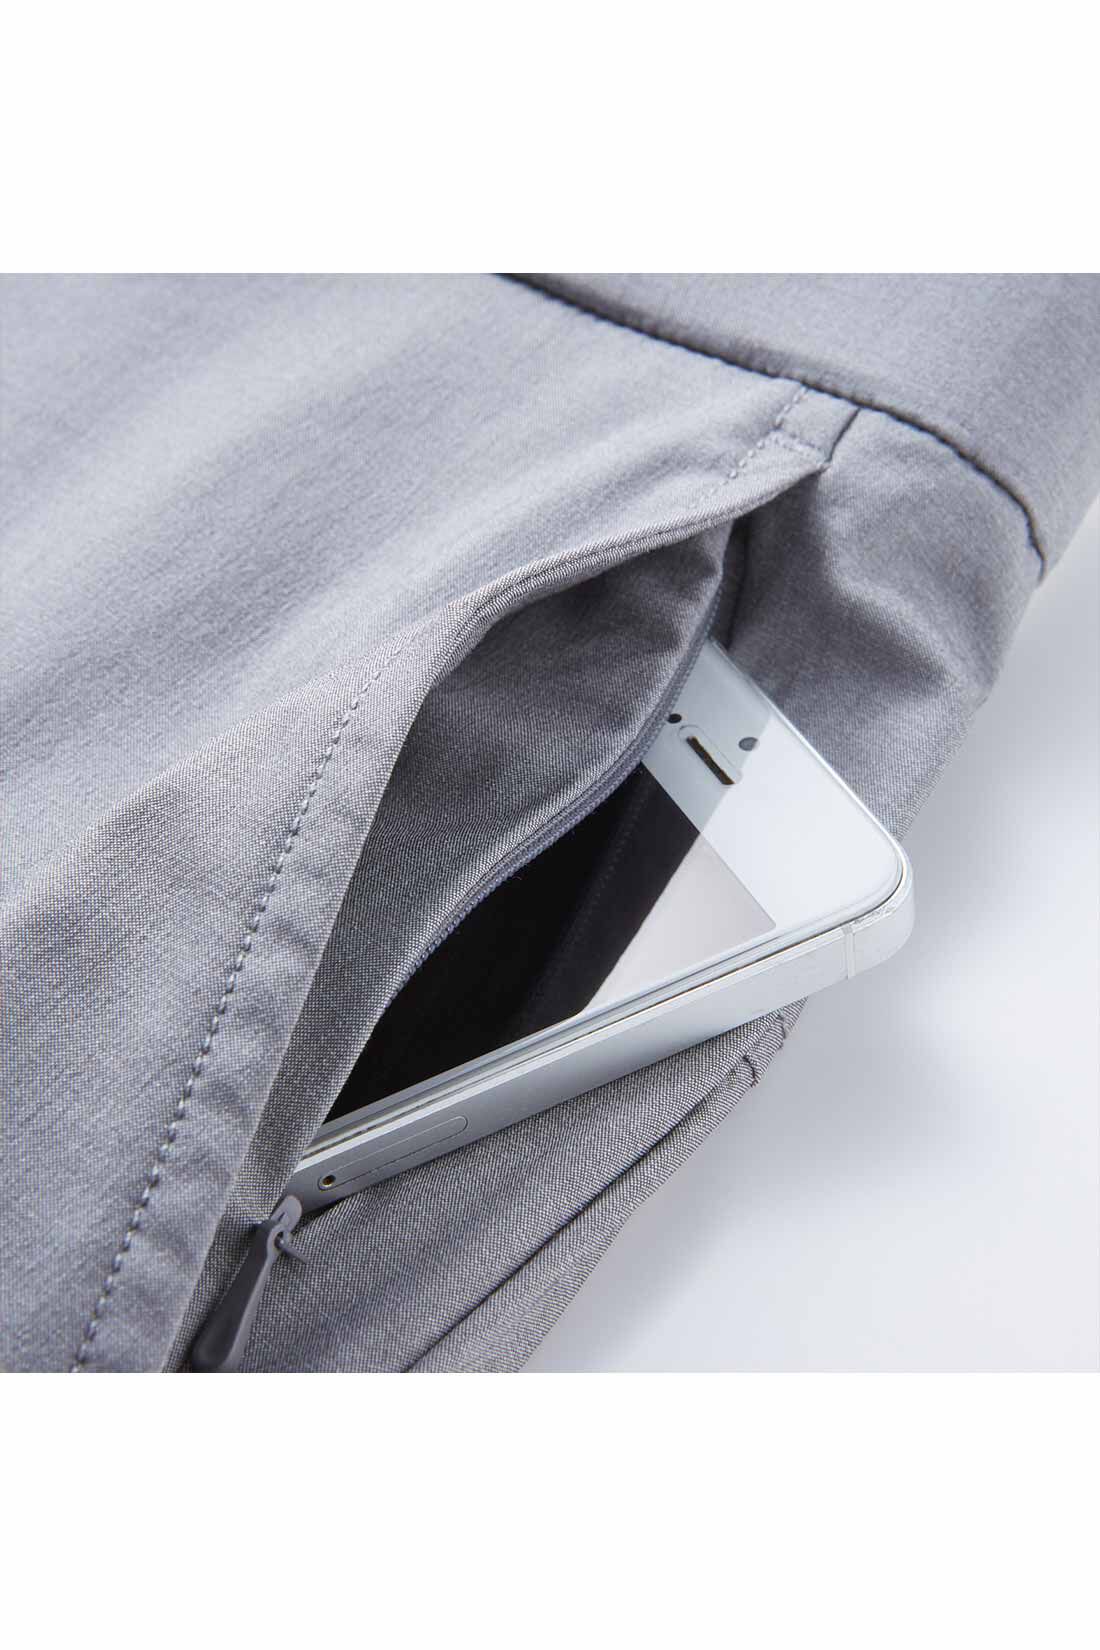 イディット|IEDIT[イディット]　UVカット・吸汗速乾・接触冷感がうれしい エアノビライト涼やかメンズテーパードパンツ〈グレー〉|左わきのポケットはダブルポケット仕様。落下防止のコンシールファスナー付き。